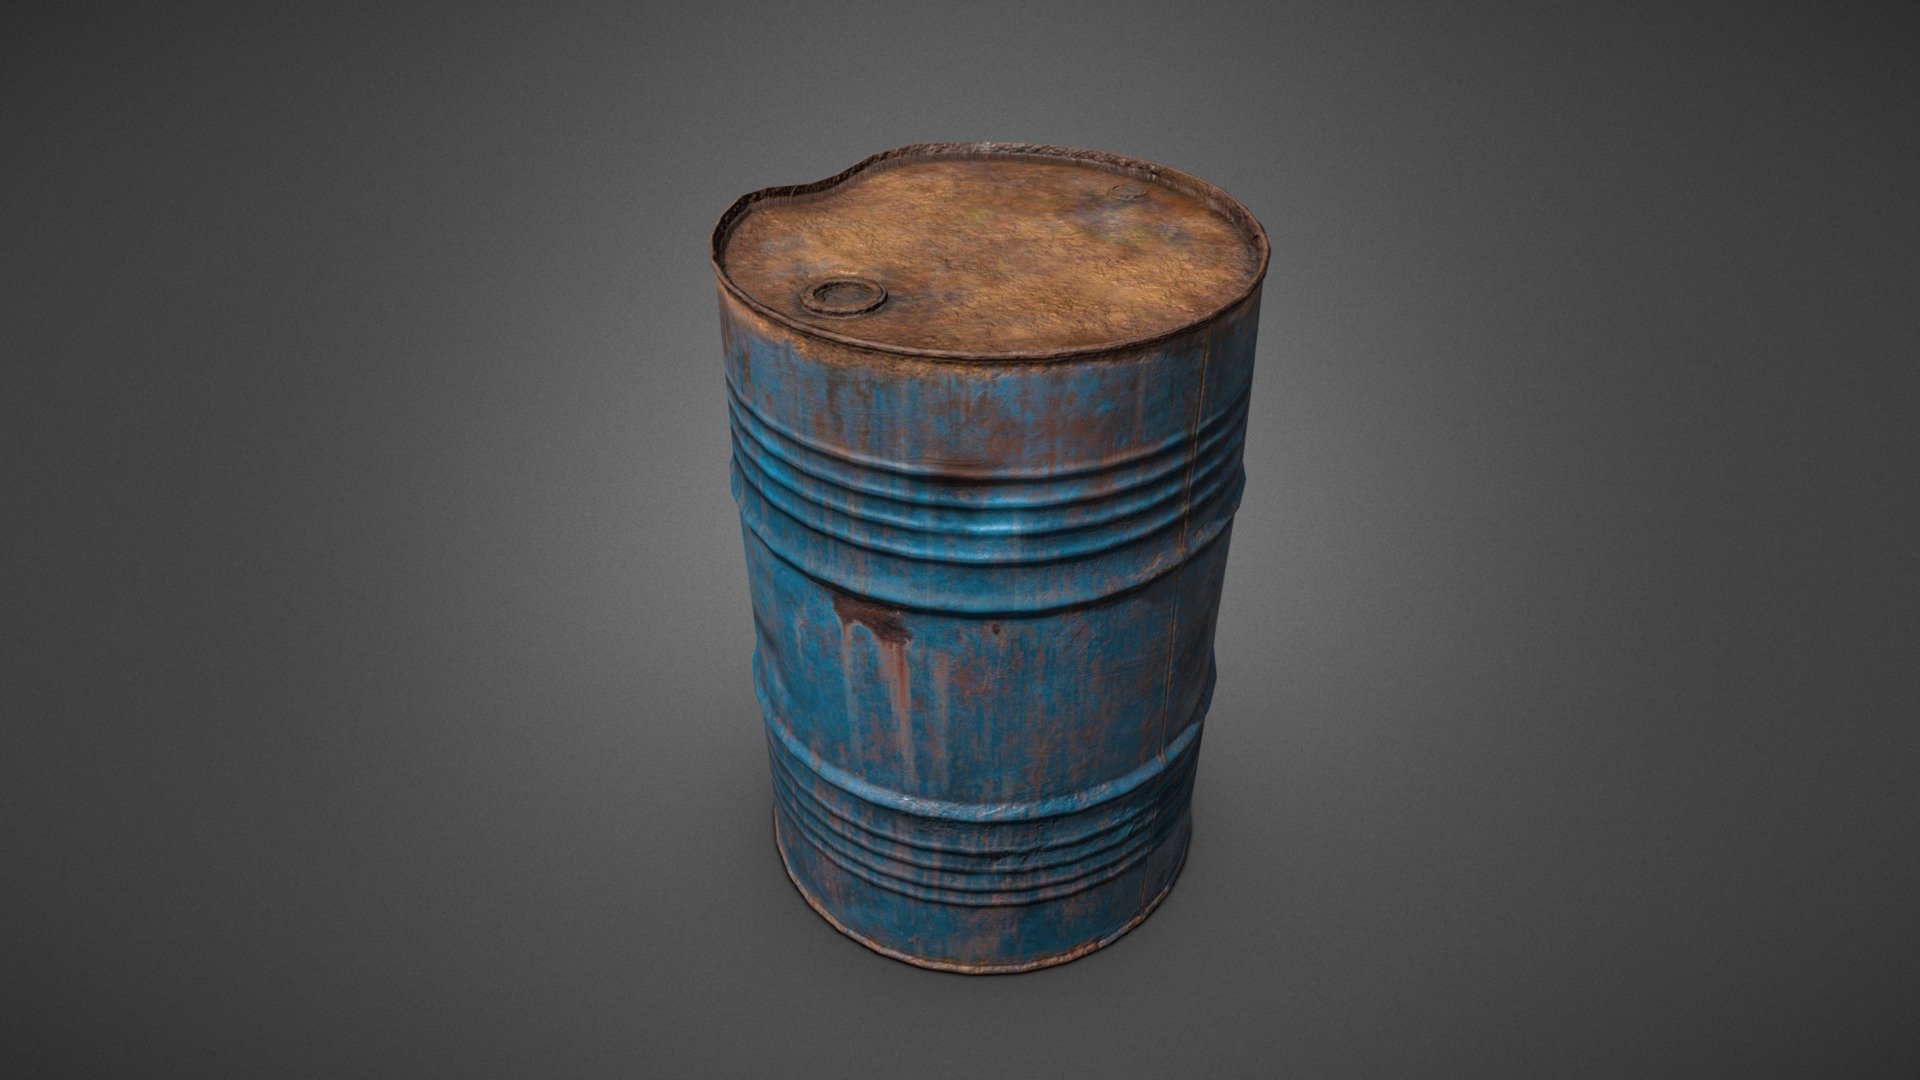 Barrel costume rust фото 110